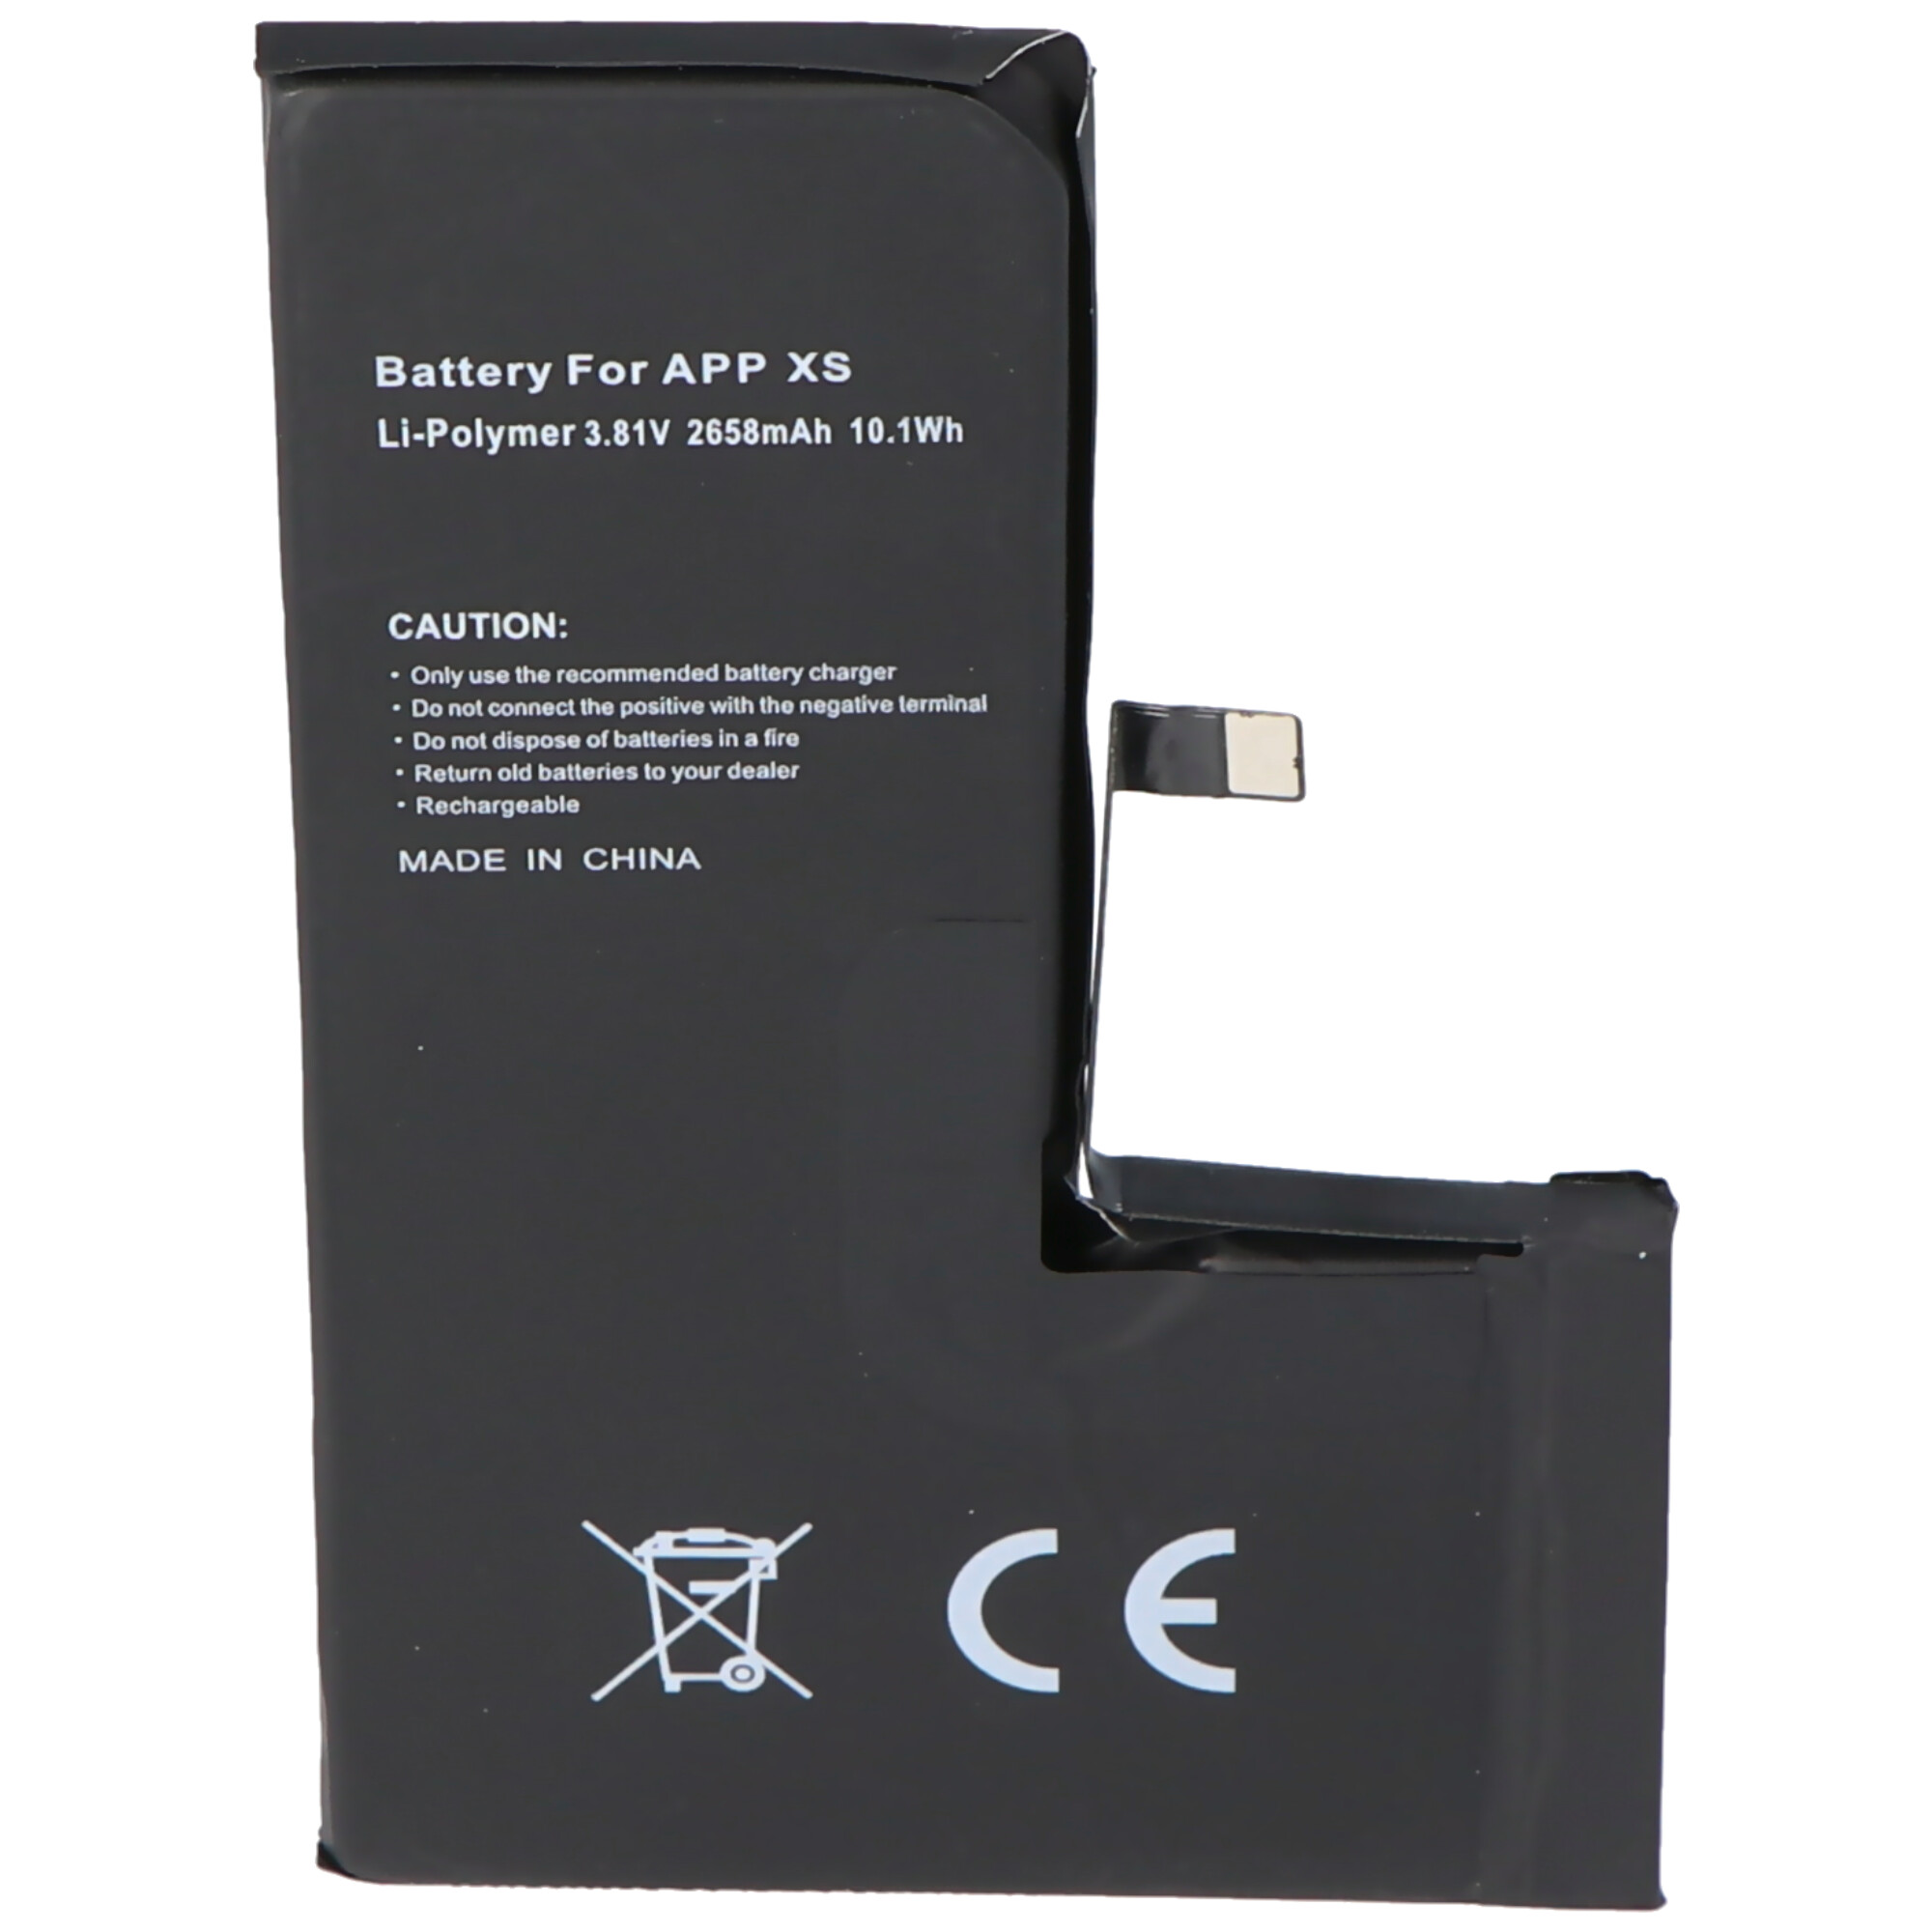 Akku passend für Apple iPhone XS, Li-Polymer, 3,81V, 2658mAh, 10,1Wh, built-in, ohne Werkzeug - without battery health information